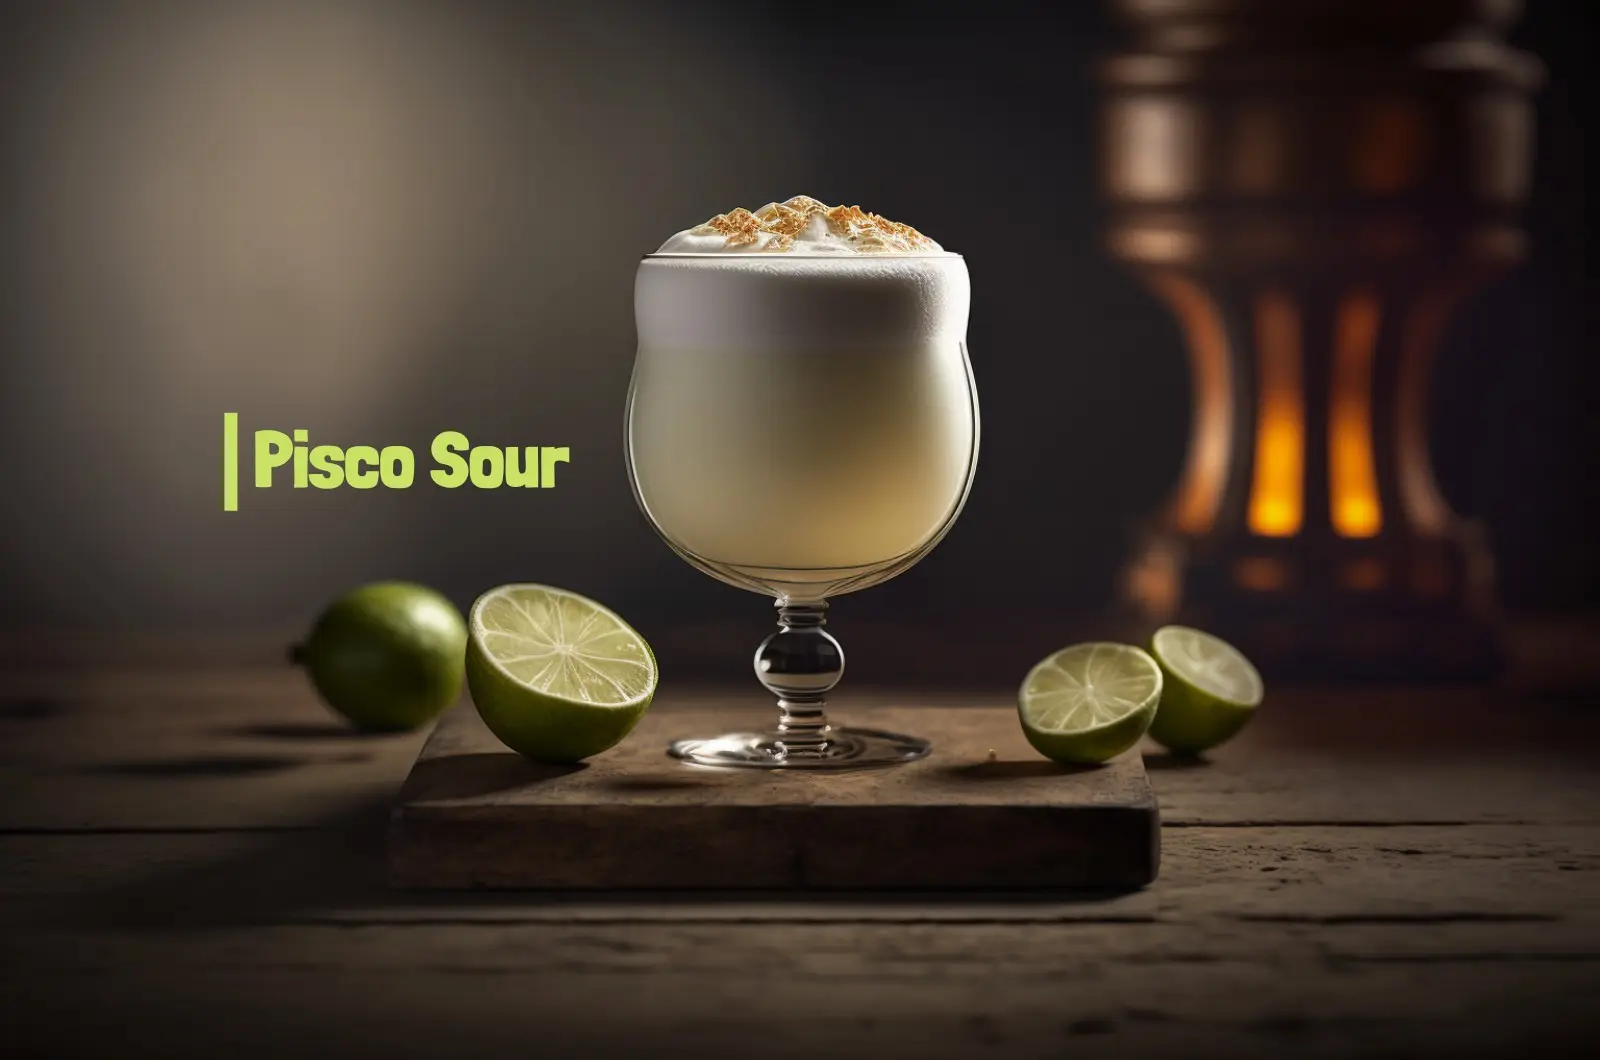 Peruvian Pisco Sour in 1 minute - Peruchos Food